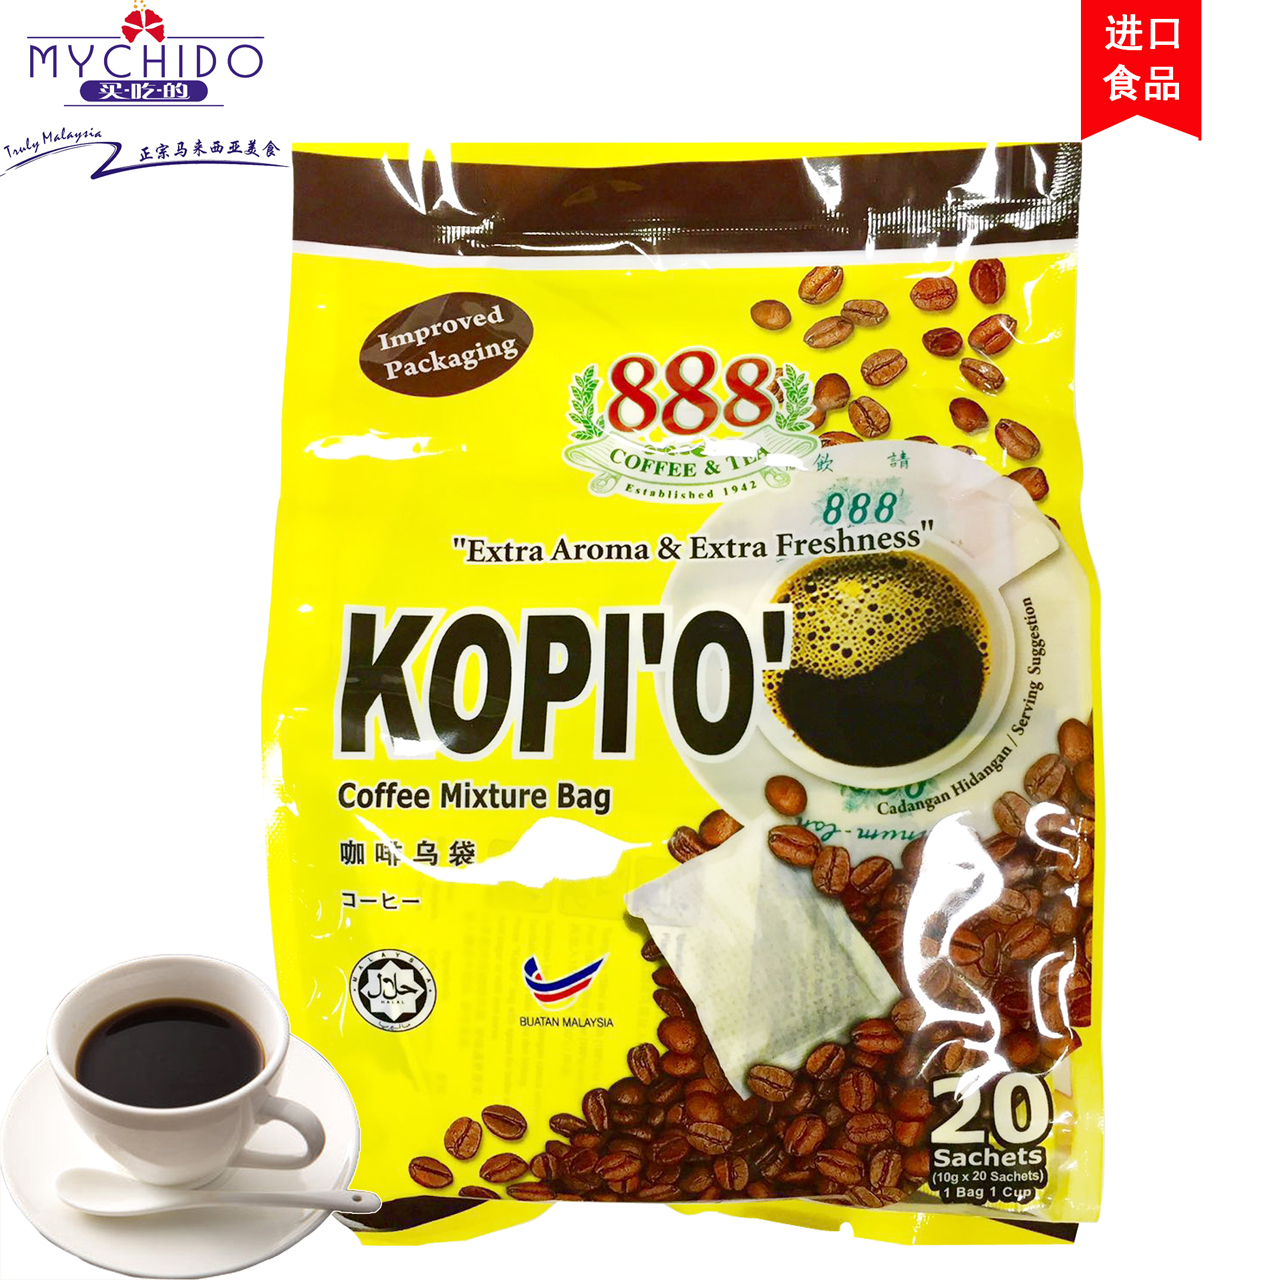 原装进口马来西亚特产咖啡乌888牌咖啡乌袋黑咖啡KOPI-O 手冲咖啡